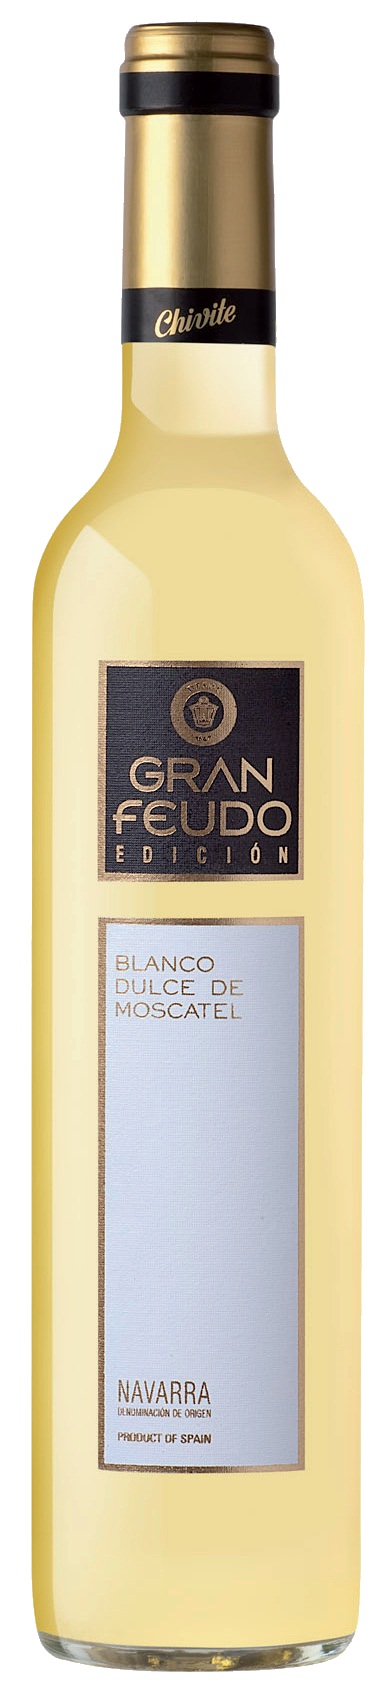 Logo Wine Gran Feudo Chivite Blanco de Moscatel